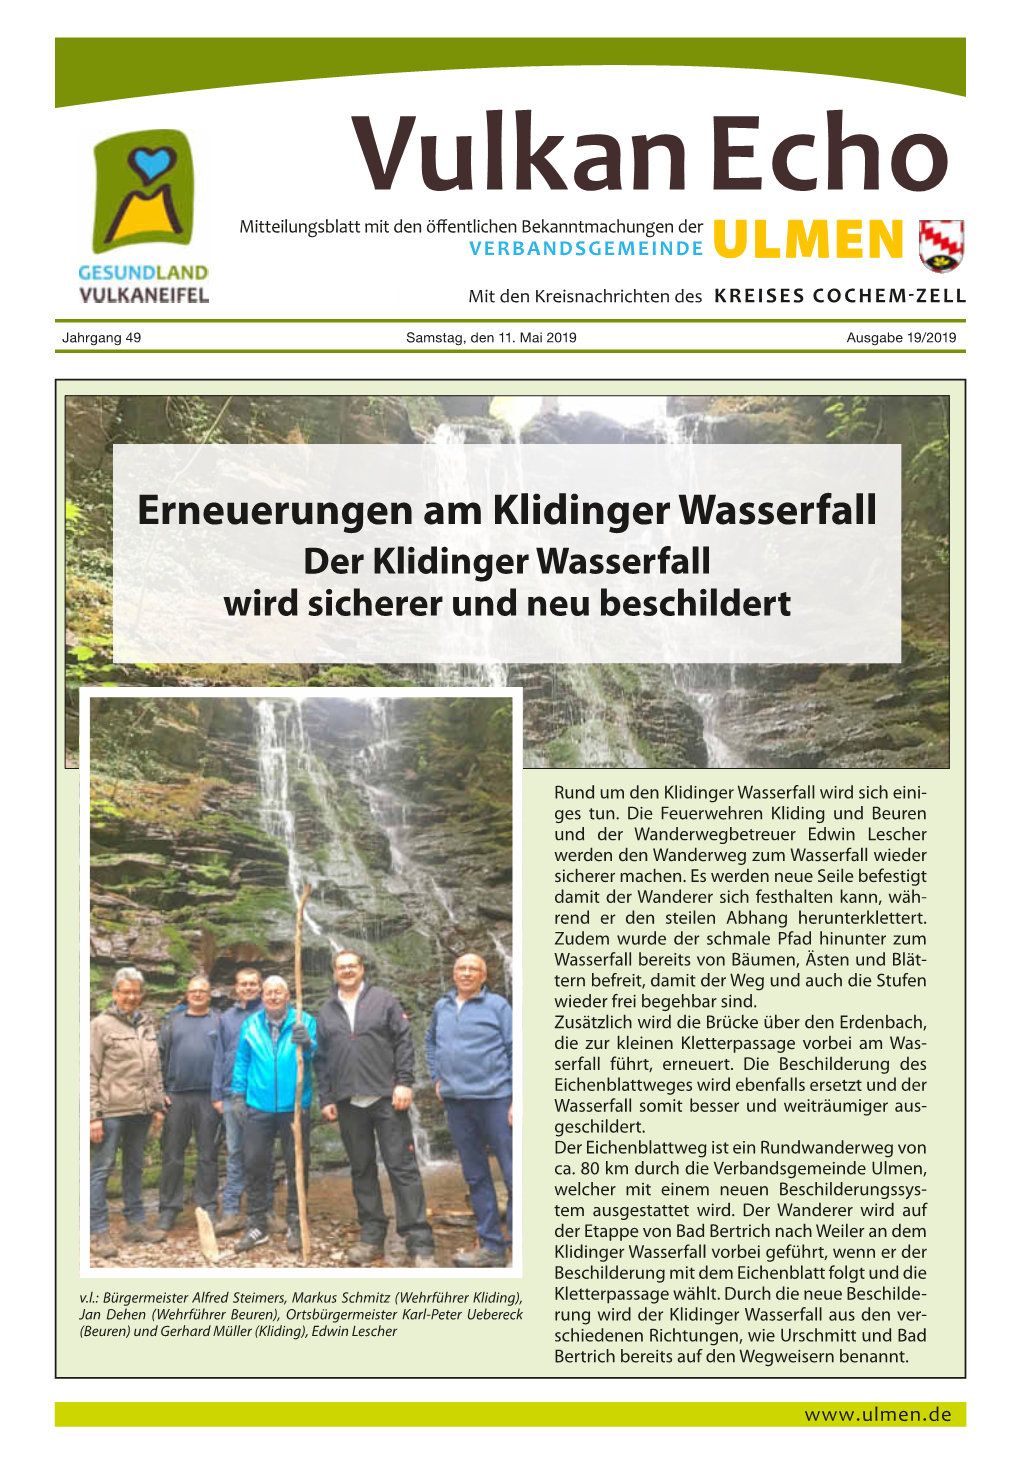 Vulkan Echo Mitteilungsblatt Mit Den Öffentlichen Bekanntmachungen Der Verbandsgemeinde Ulmen Mit Den Kreisnachrichten Des Kreises Cochem-Zell